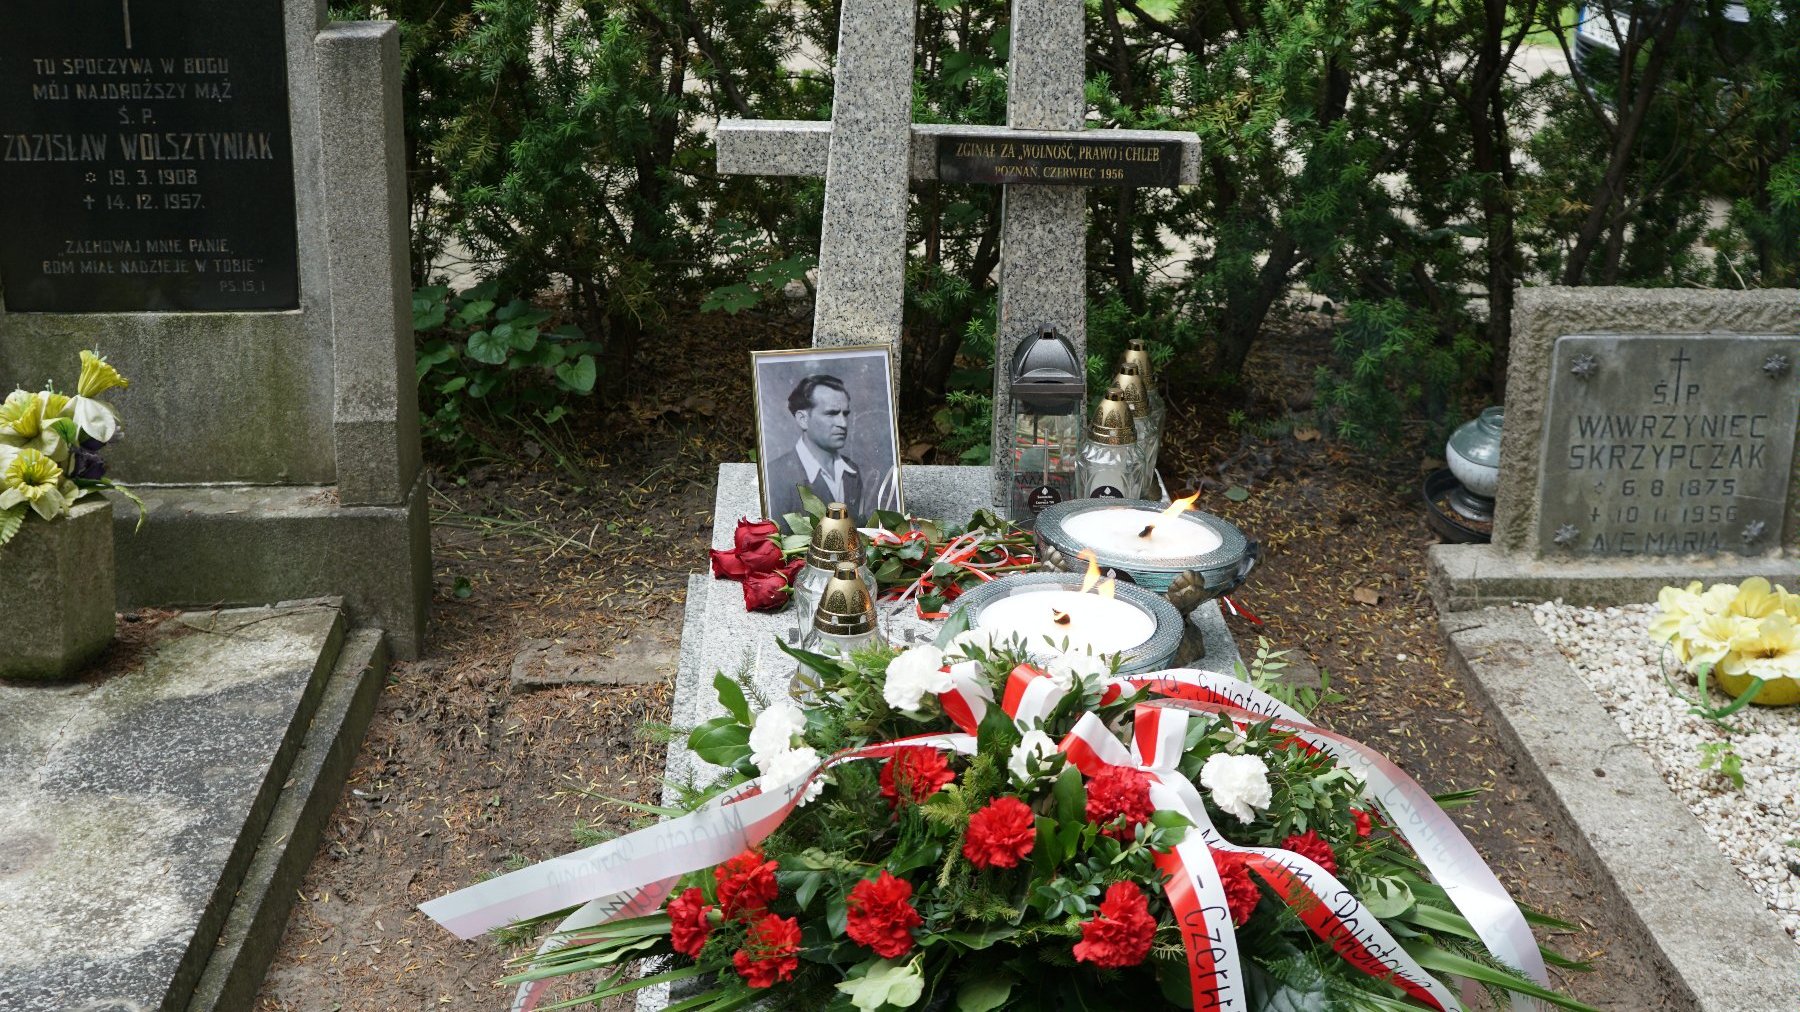 Zdjęcie przedstawia grób, na którym znajdują się kwiaty, znicze i zdjęcie.